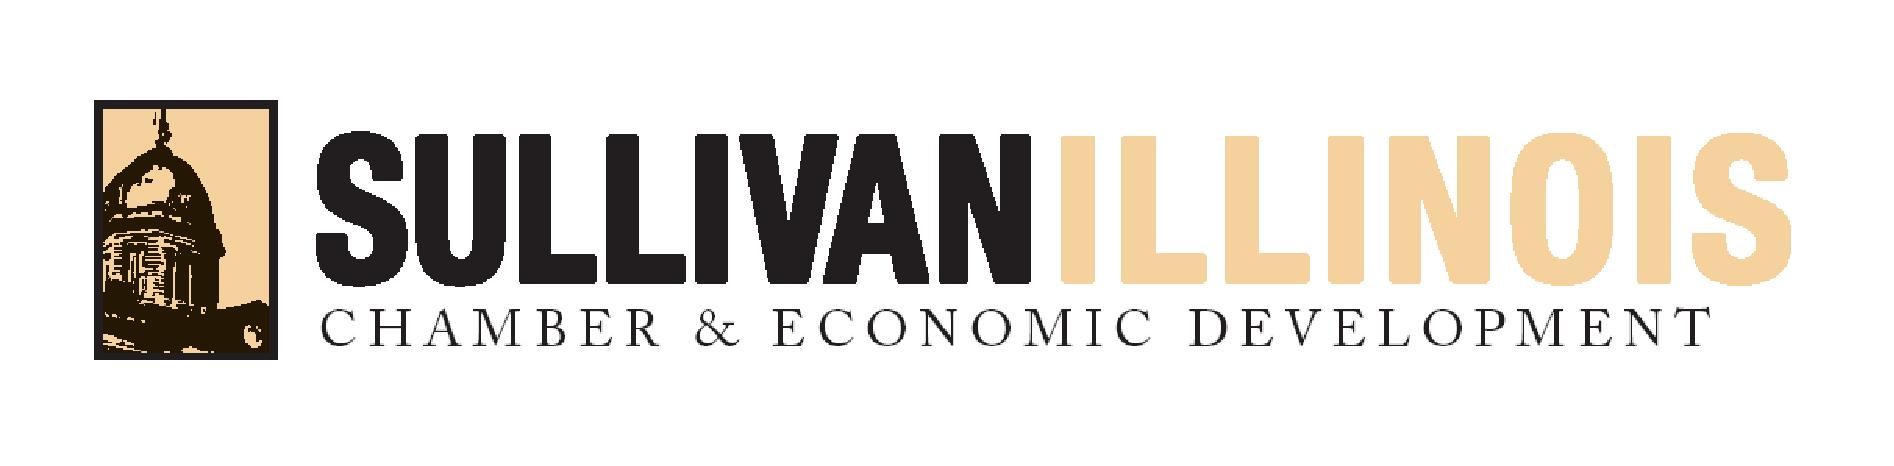 Sullivan Chamber & Economic Development